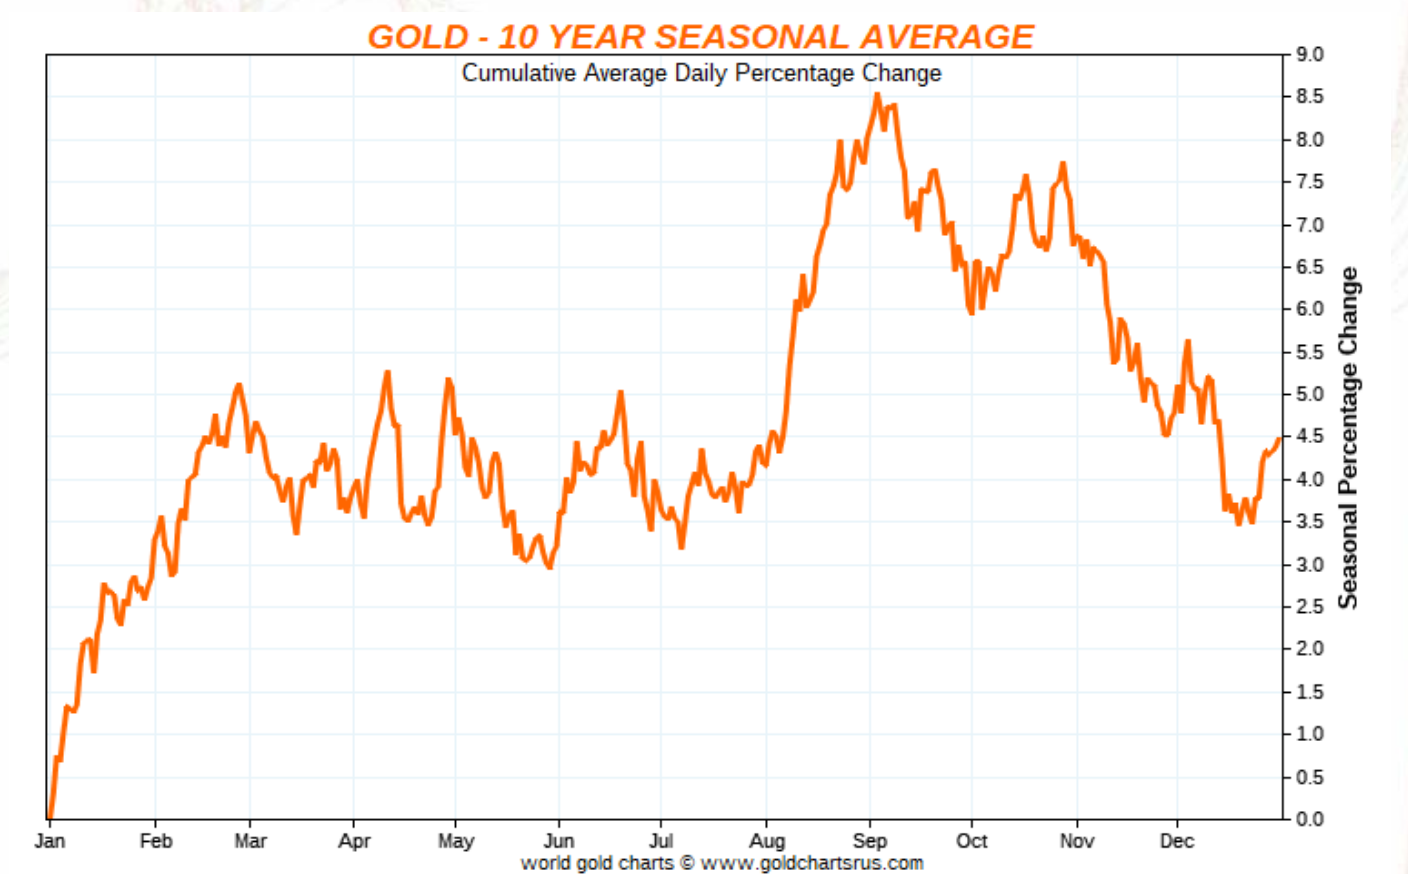 gold seasonal chart 10 year average